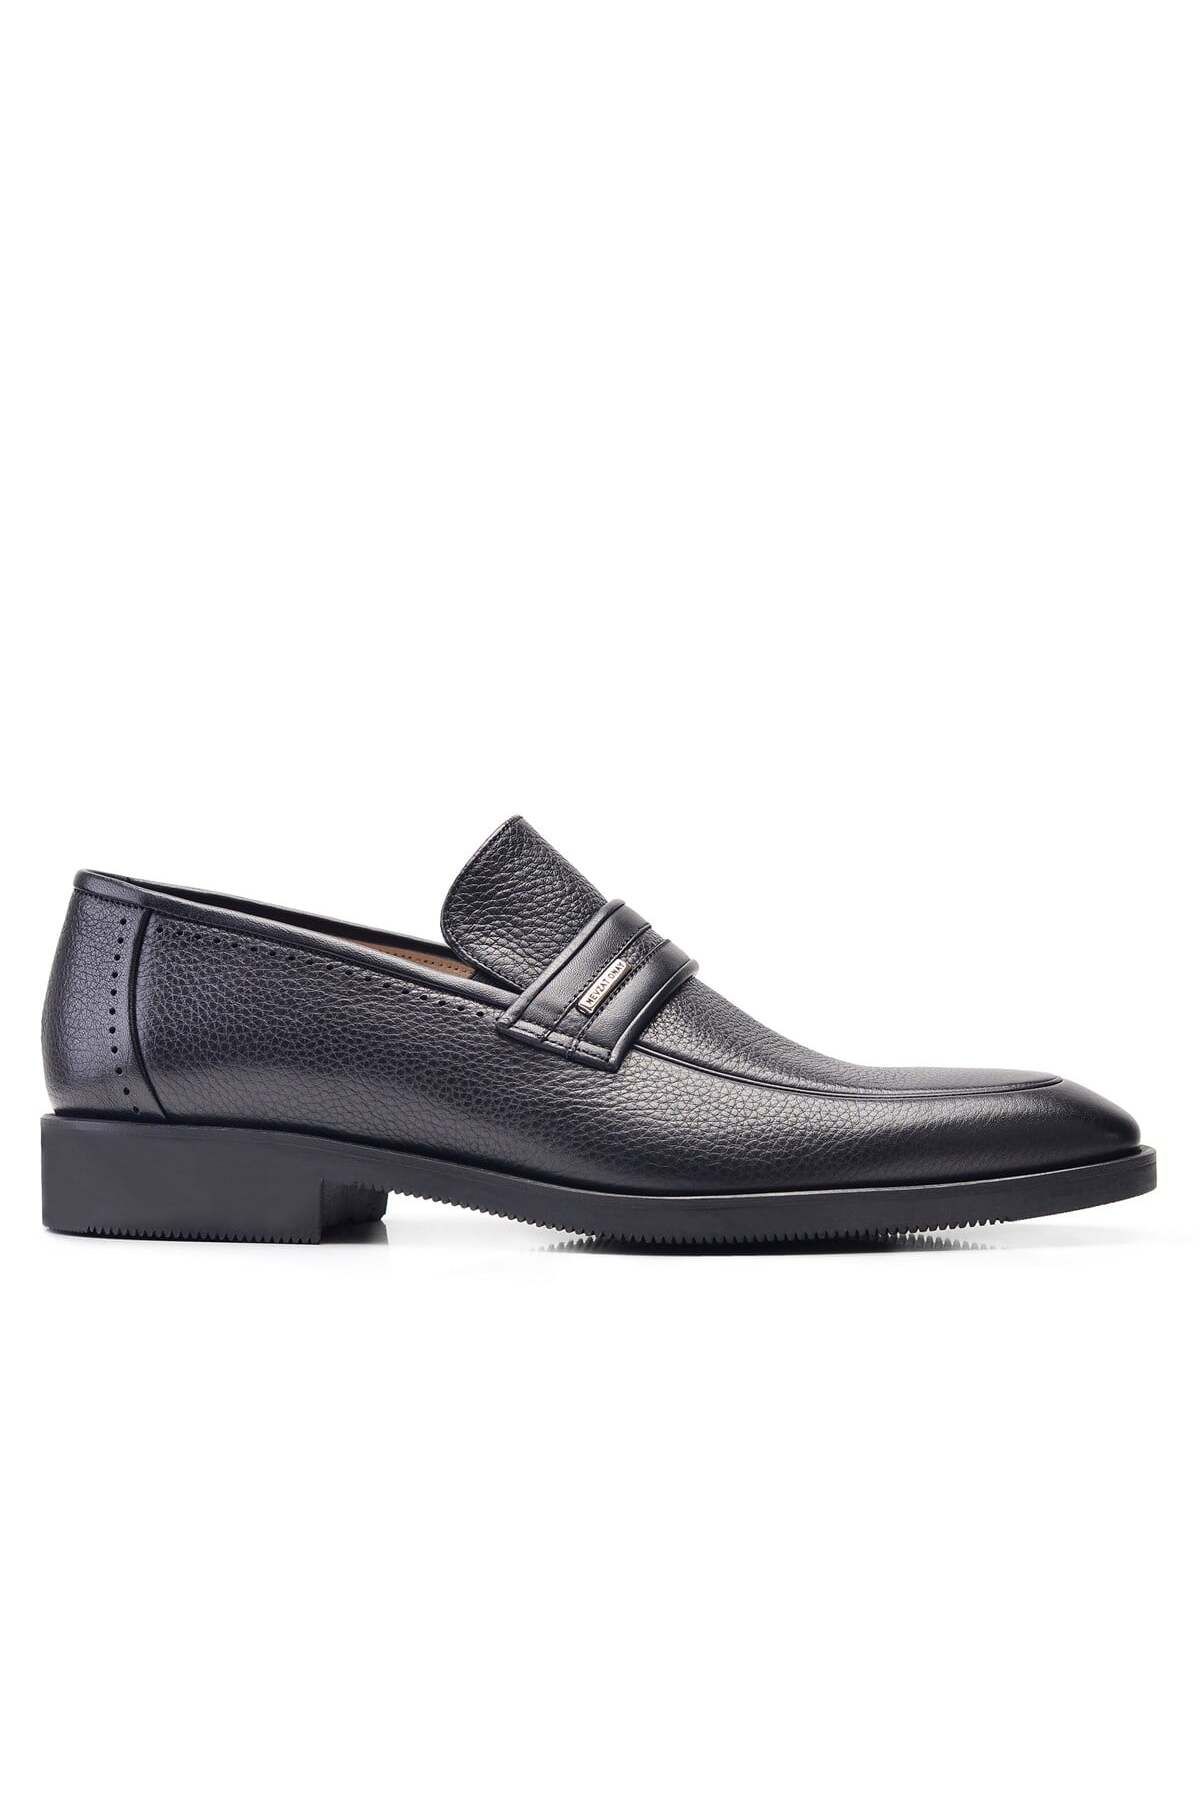 Nevzat Onay Siyah Klasik Loafer Erkek Ayakkabı -11911-